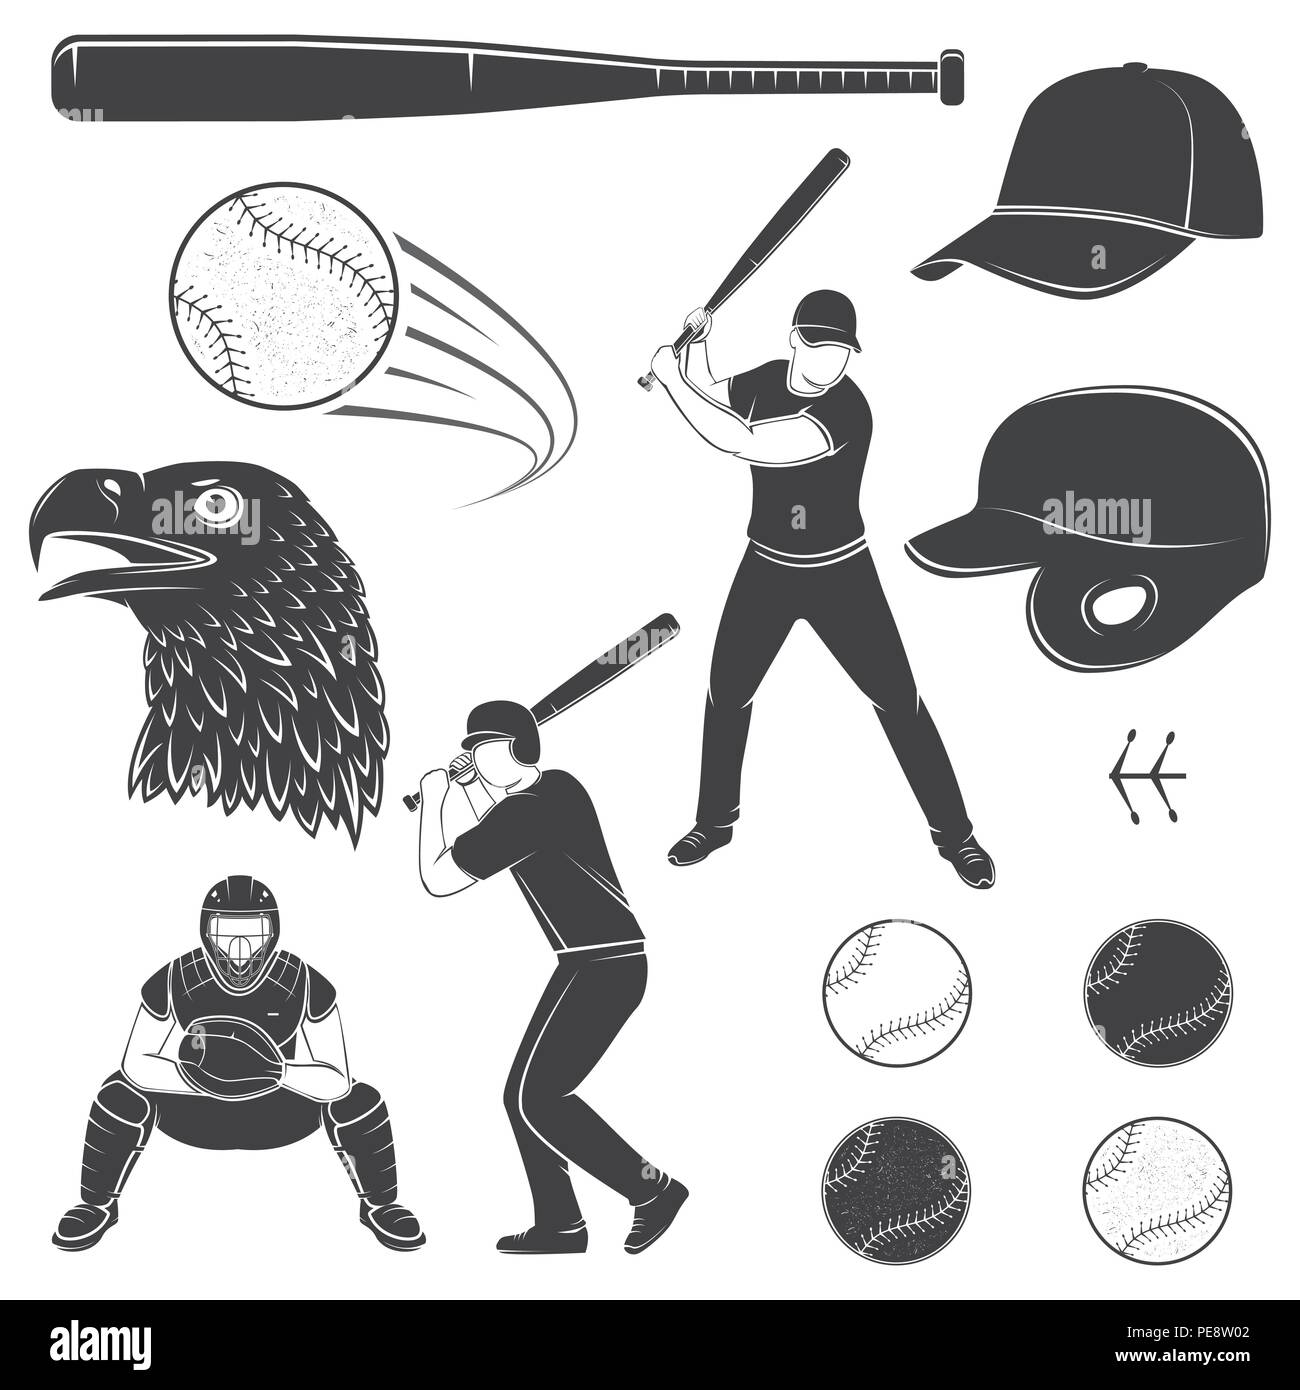 Set of baseball equipment and gear. Vector illustration. Baseball seam brushes. Ball for baseball, batter, catcher, baseball bat, helmet, cap and eagle silhouette. Stock Vector